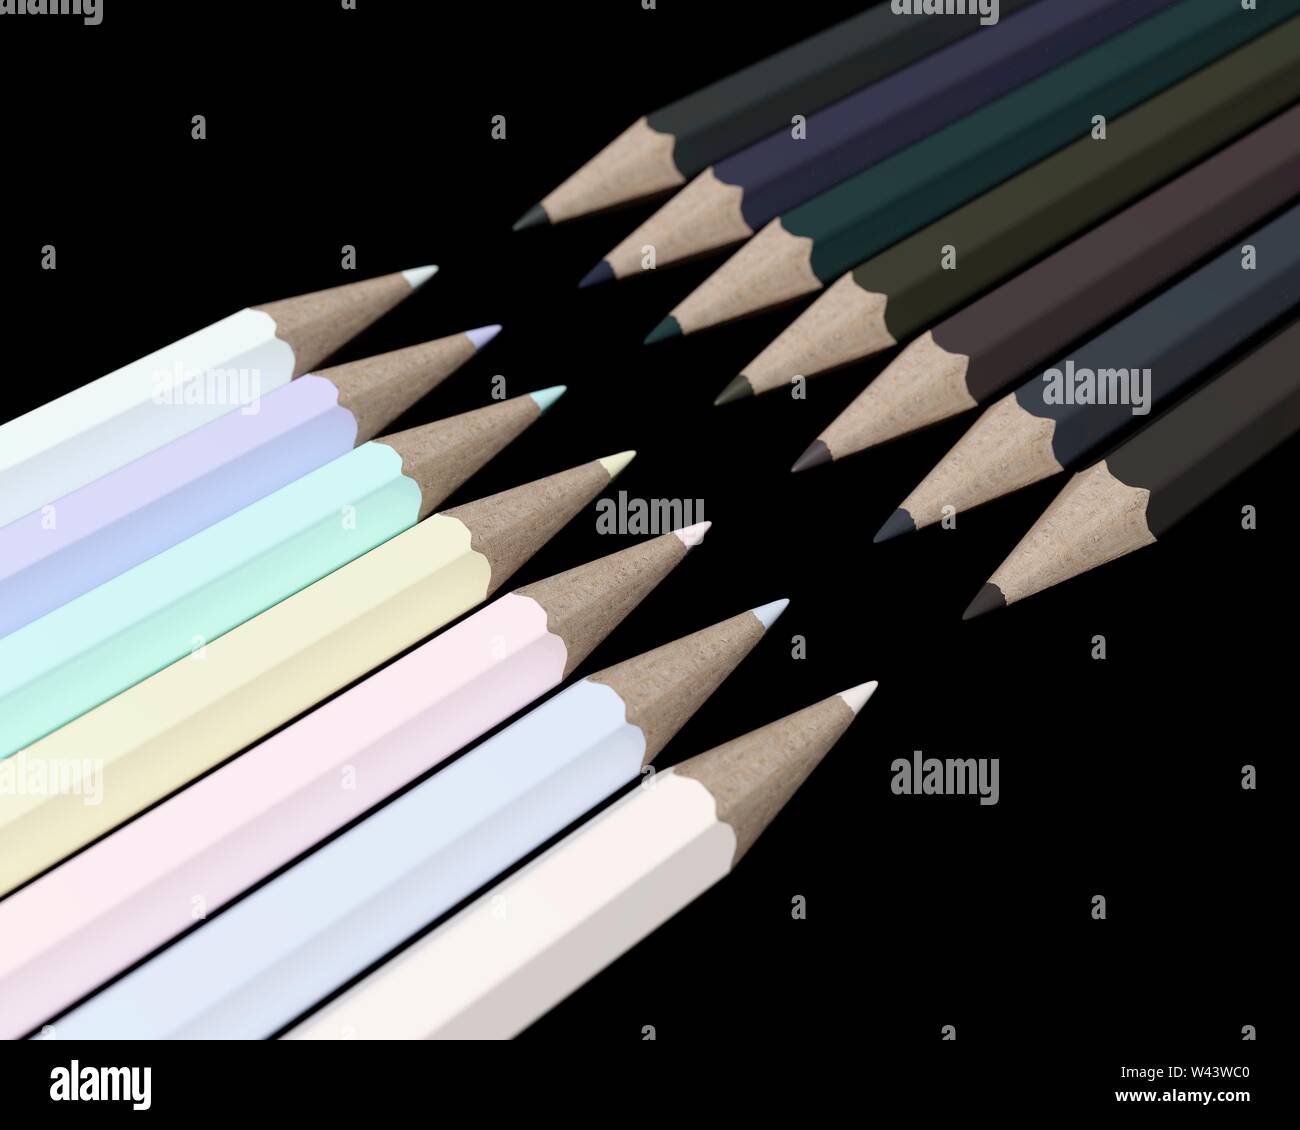 Bleistifte in gegensätzlichen hellen und dunklen Farbtöne an jedem anderen zeigt. Computer generierten Bildes. Stockfoto